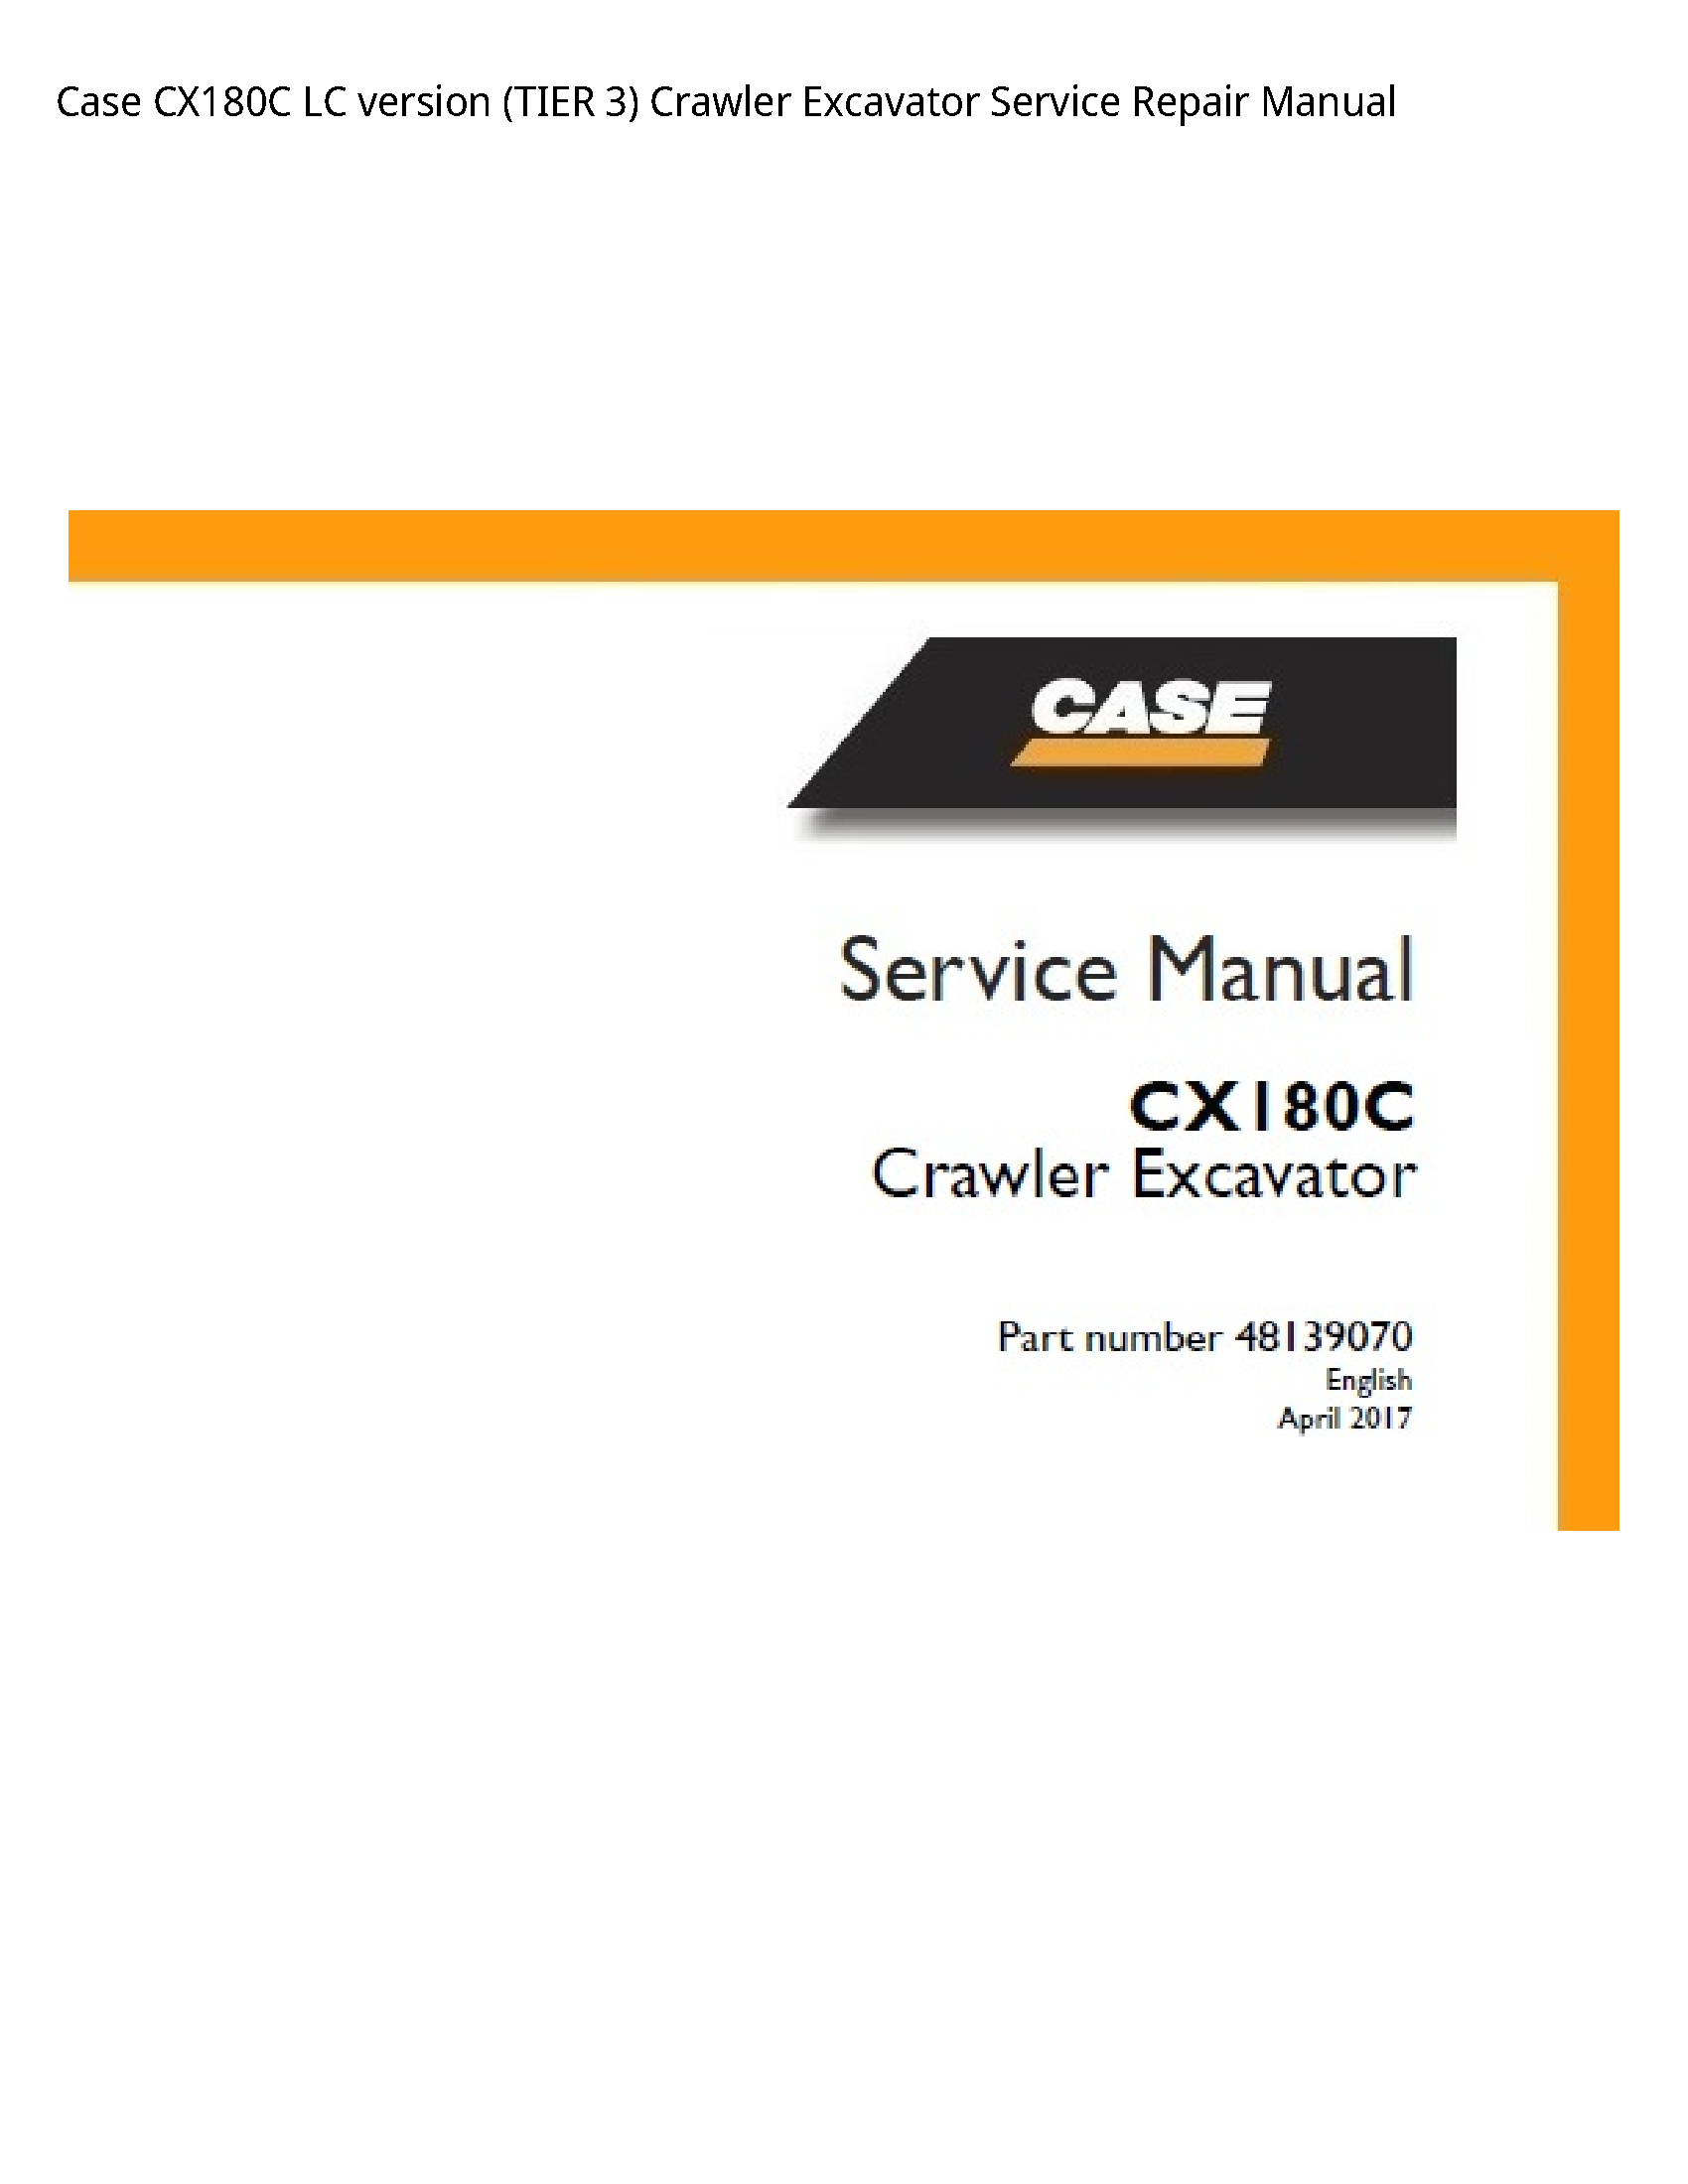 Case/Case IH CX180C LC version (TIER Crawler Excavator manual